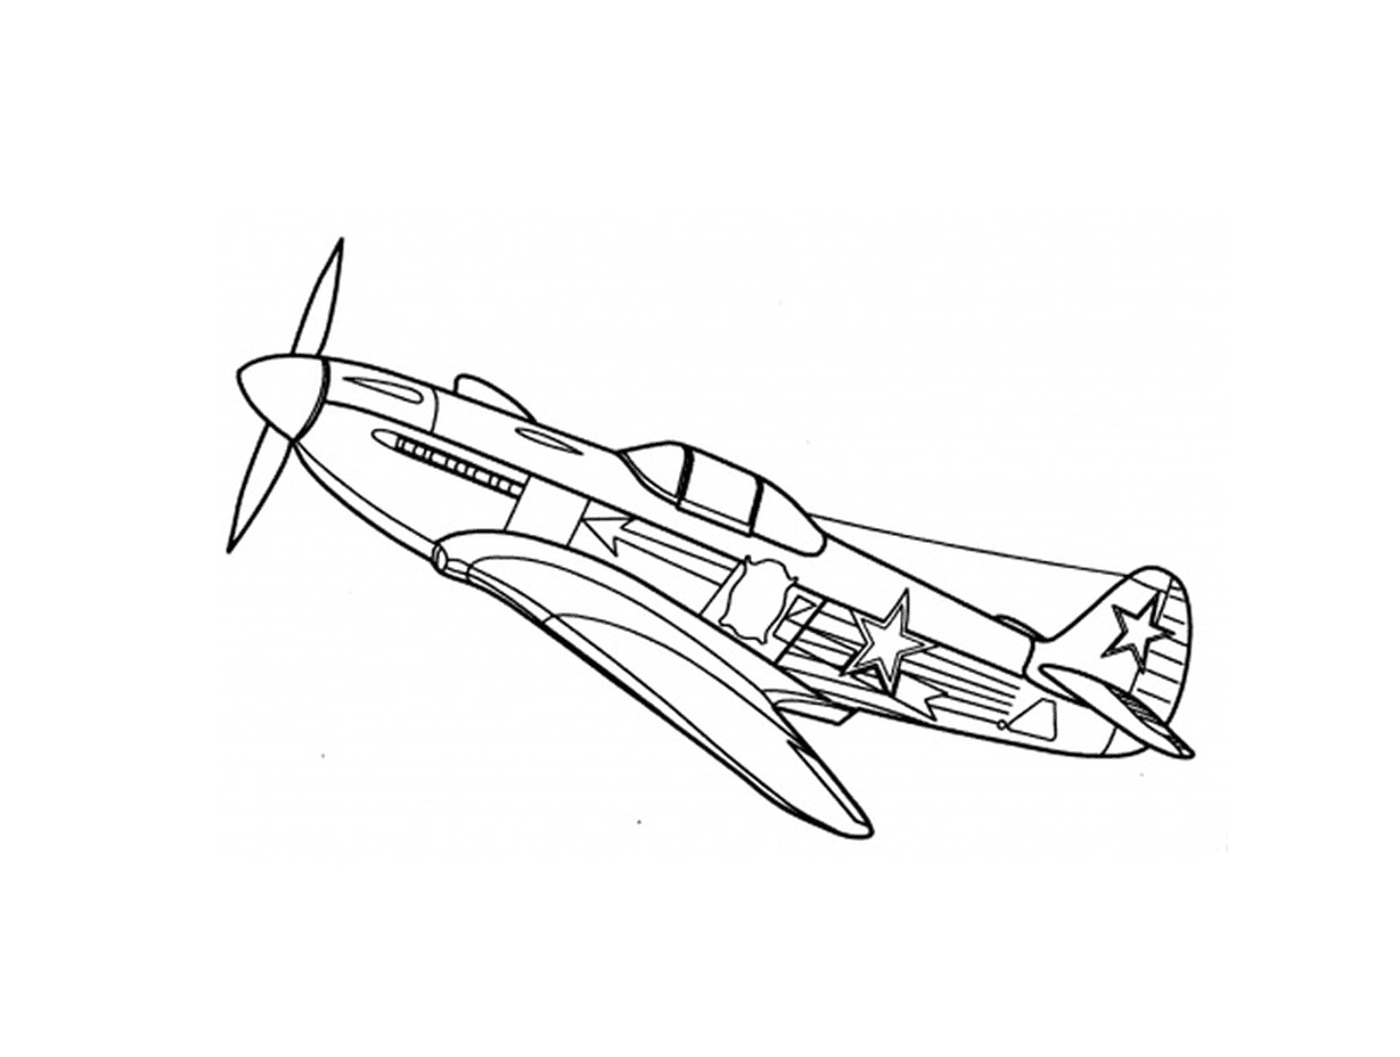   Un avion de guerre est dessiné 